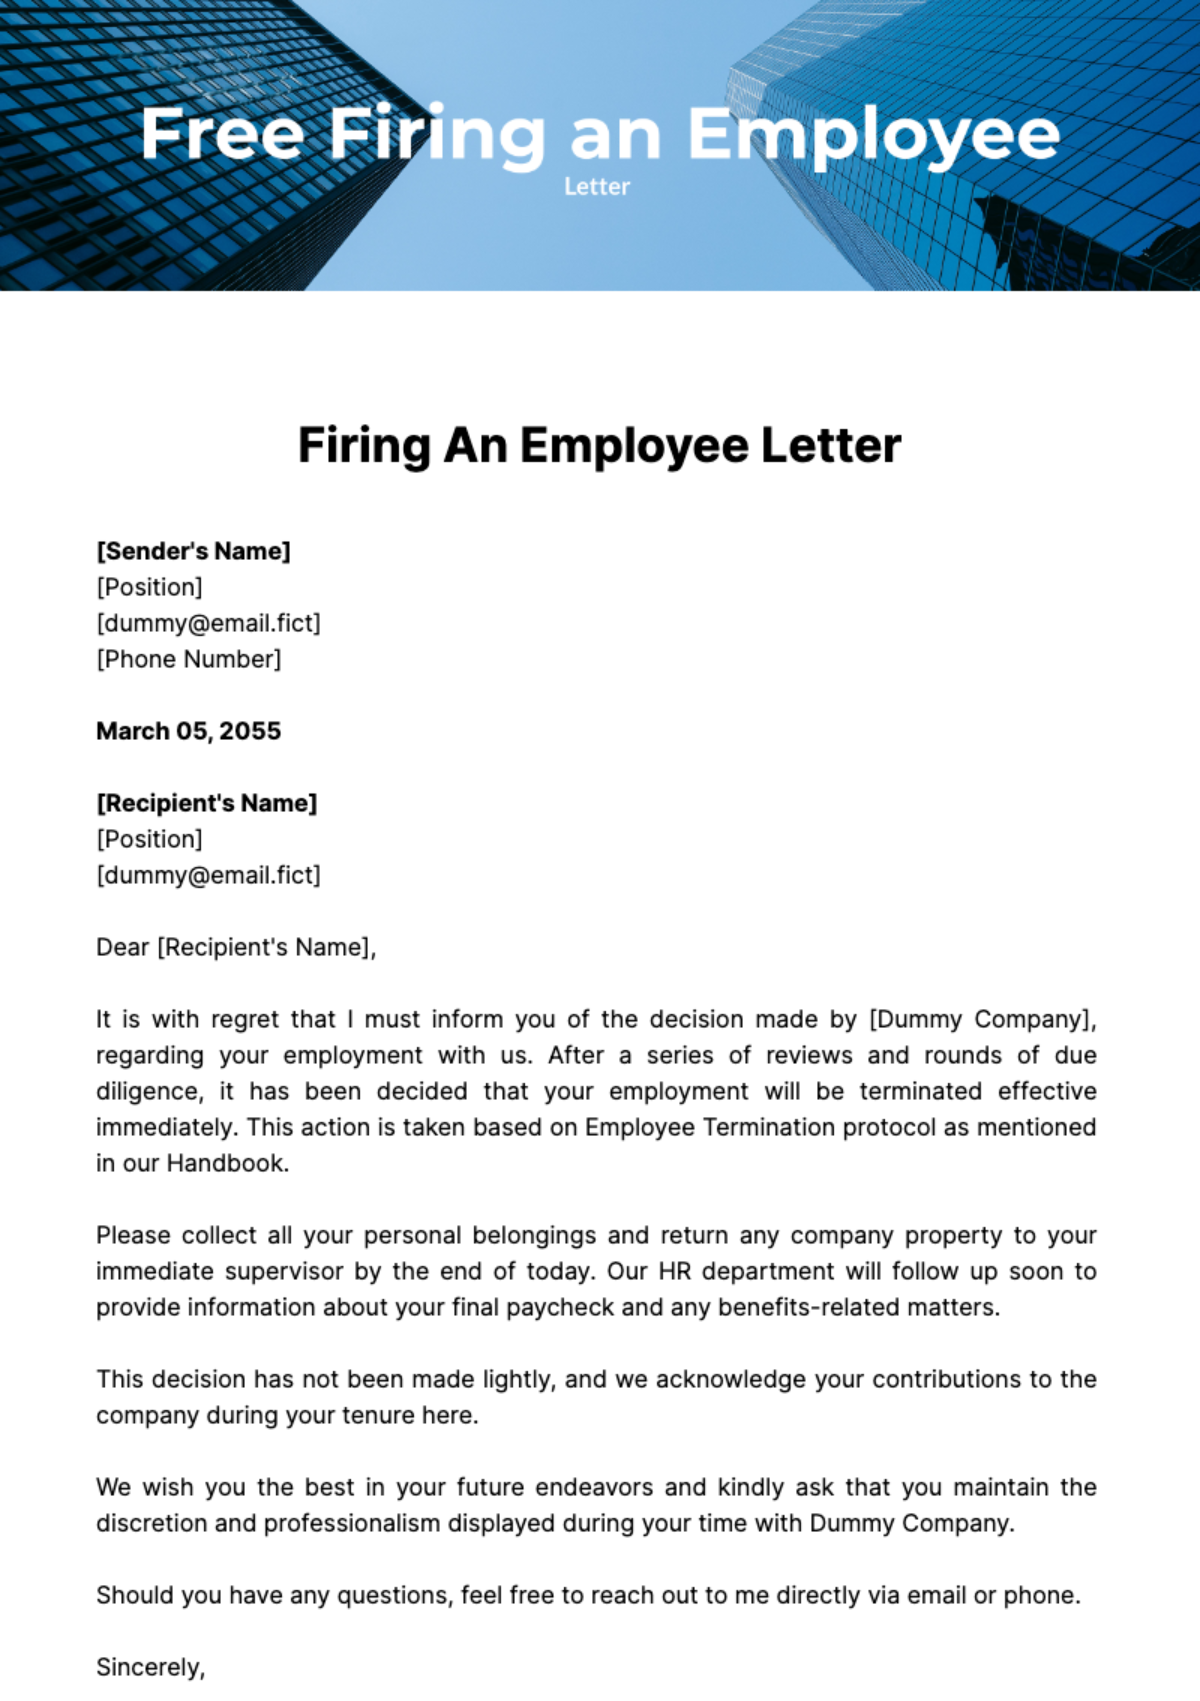 Firing an Employee Letter Template